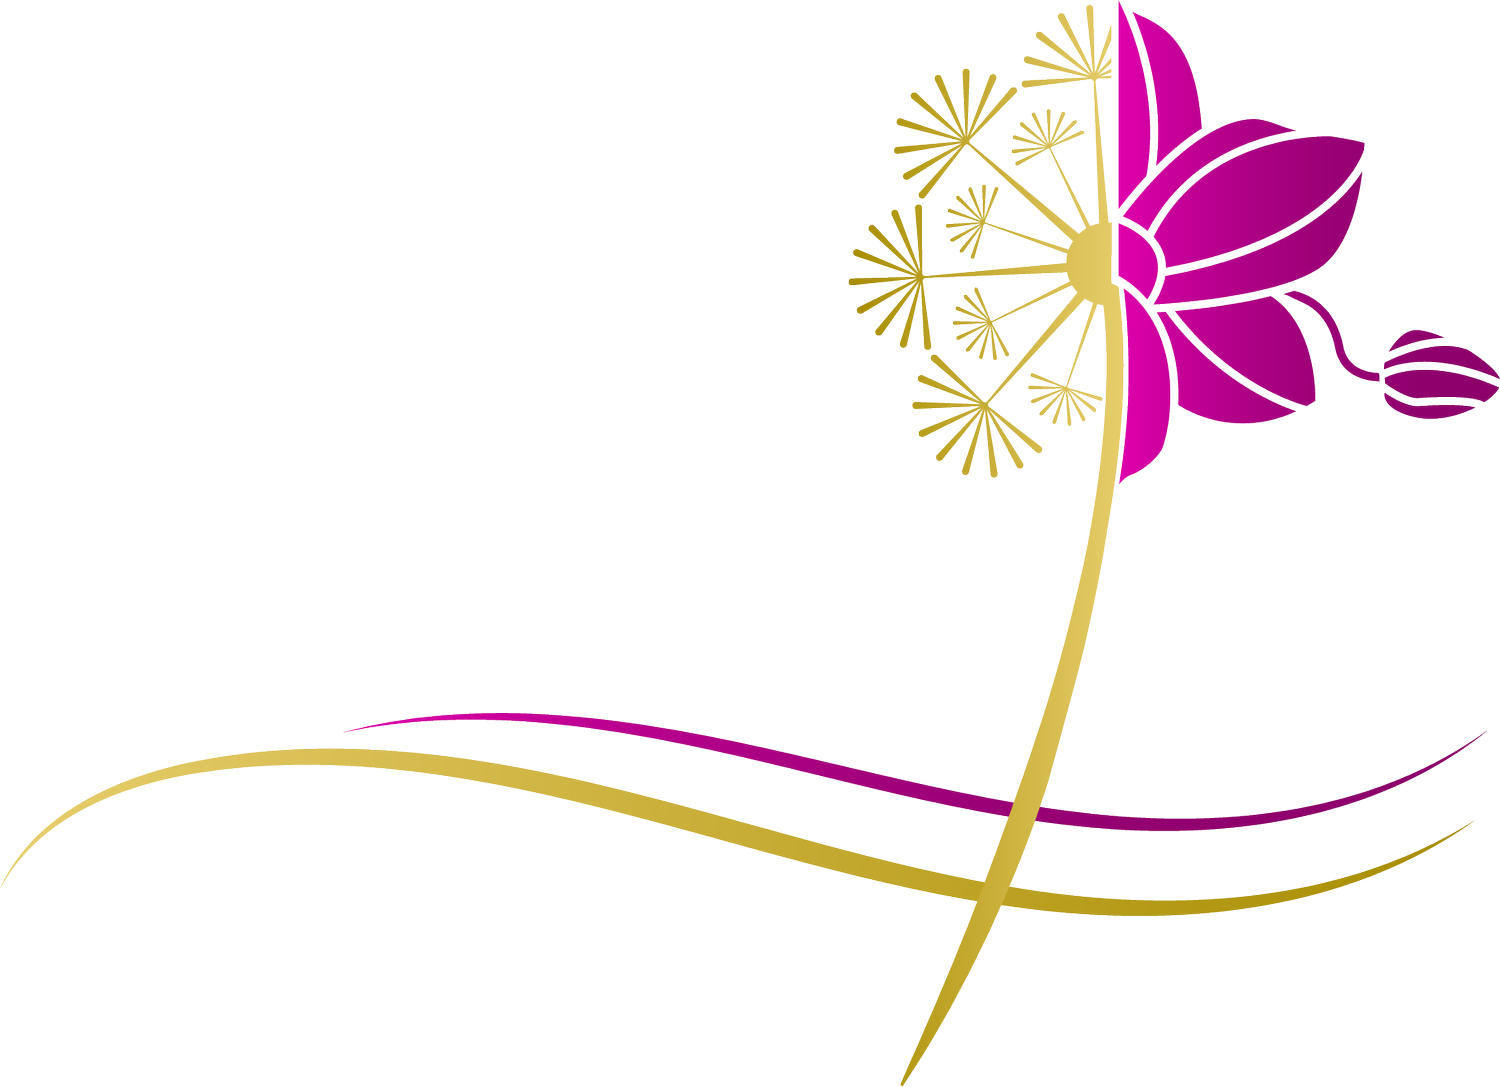 Flourish Consulting